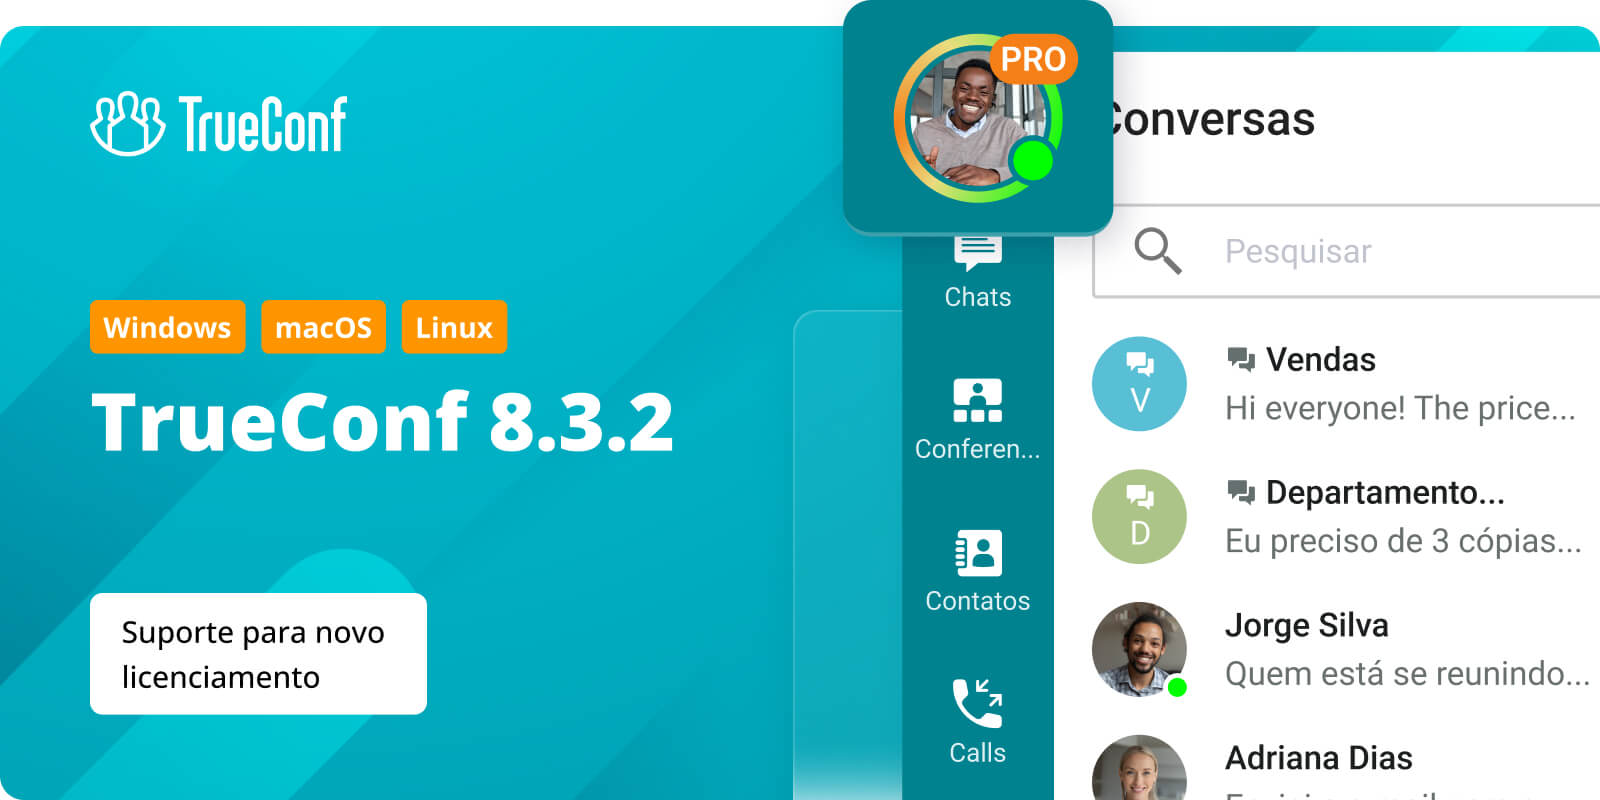 TrueConf 8.3.2 para Windows, macOS e Linux: suporte para novo licenciamento 3